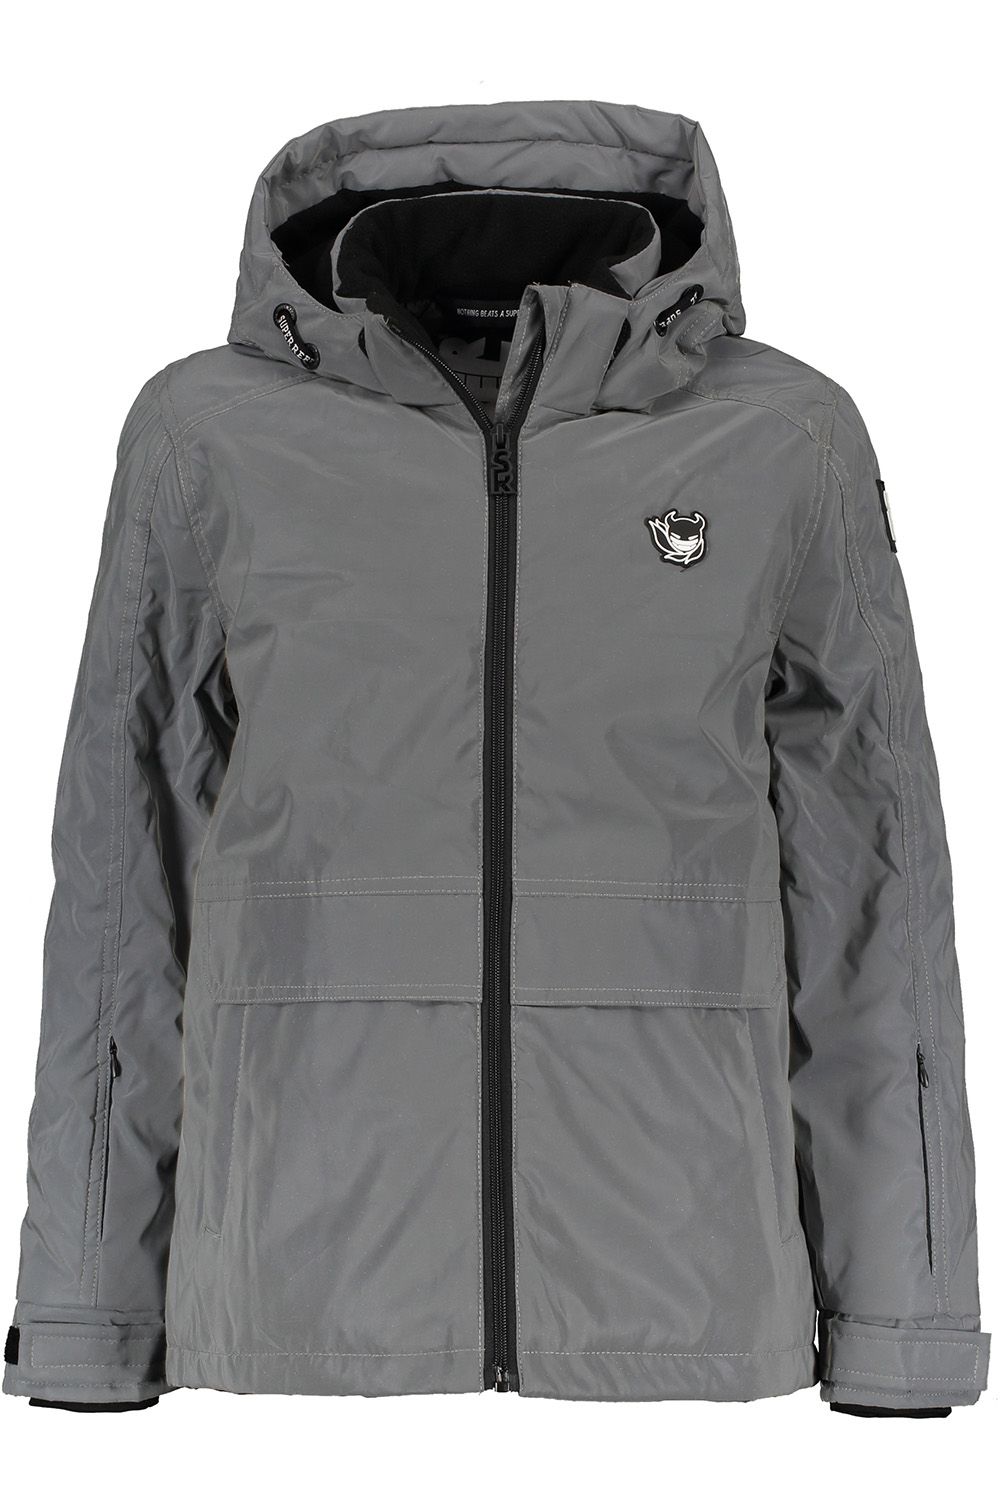 Куртка Super Rebel, размер 140, цвет серый R909-6281 - фото 1